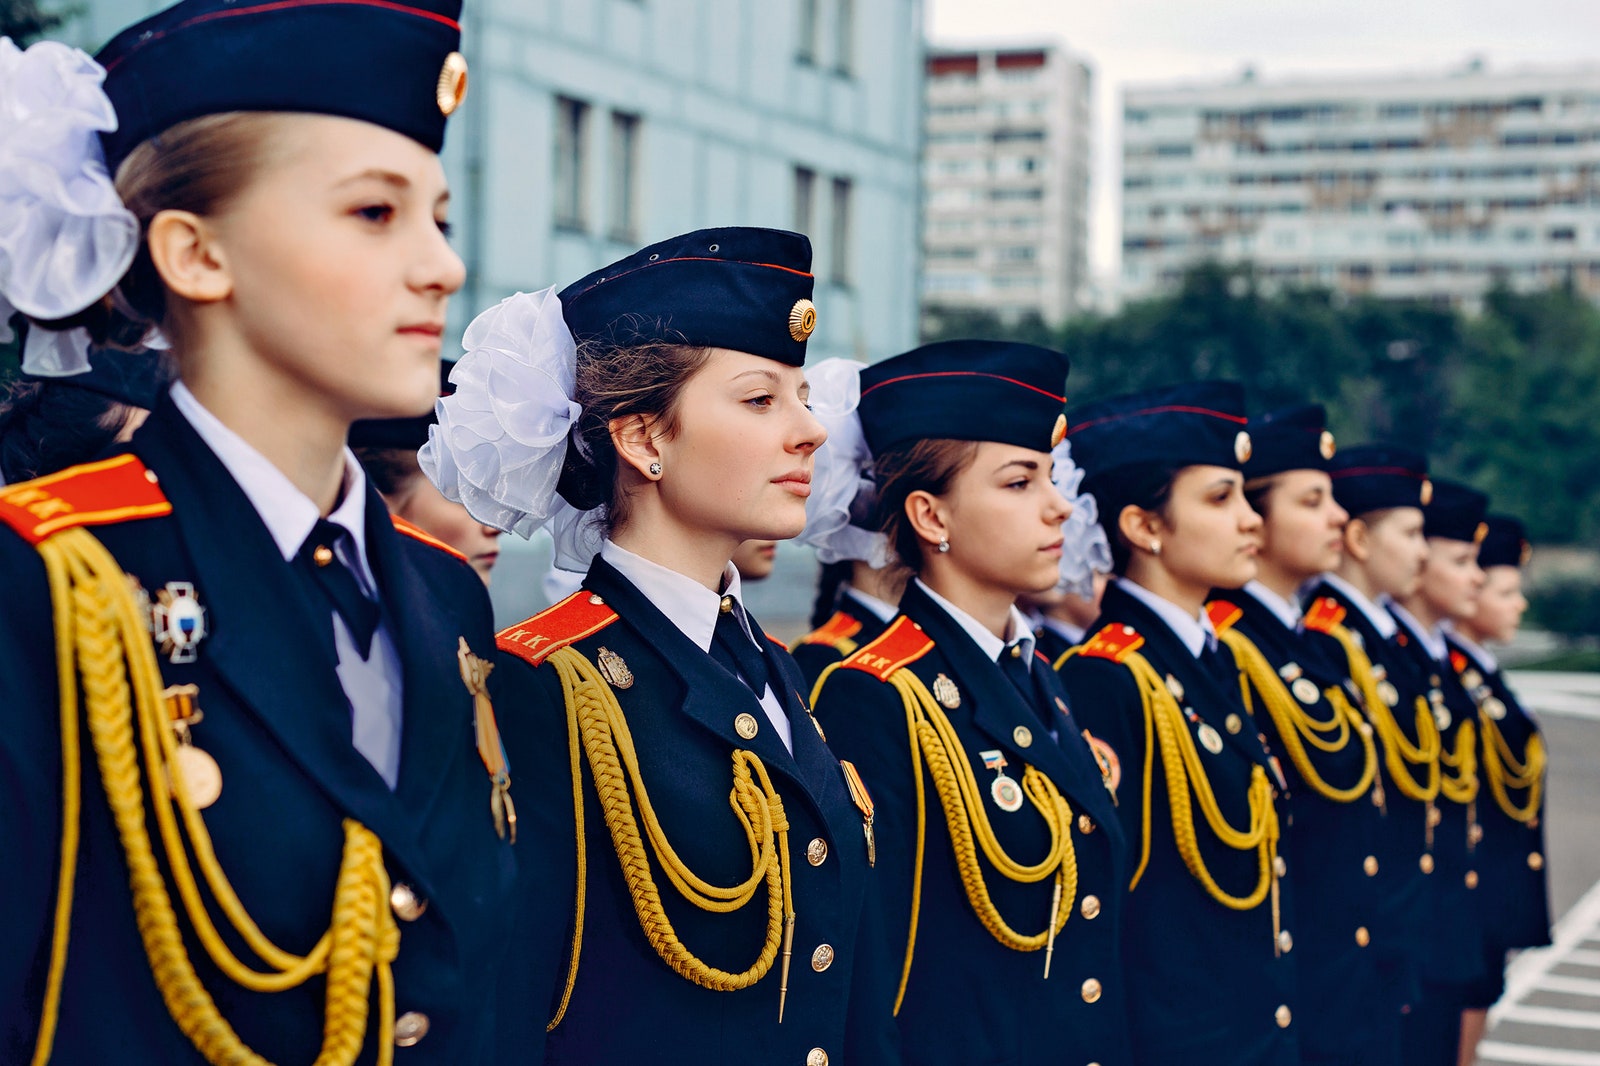 Большой белый бант  обязательная часть формы московских кадеток а не просто символ их юного возраста.